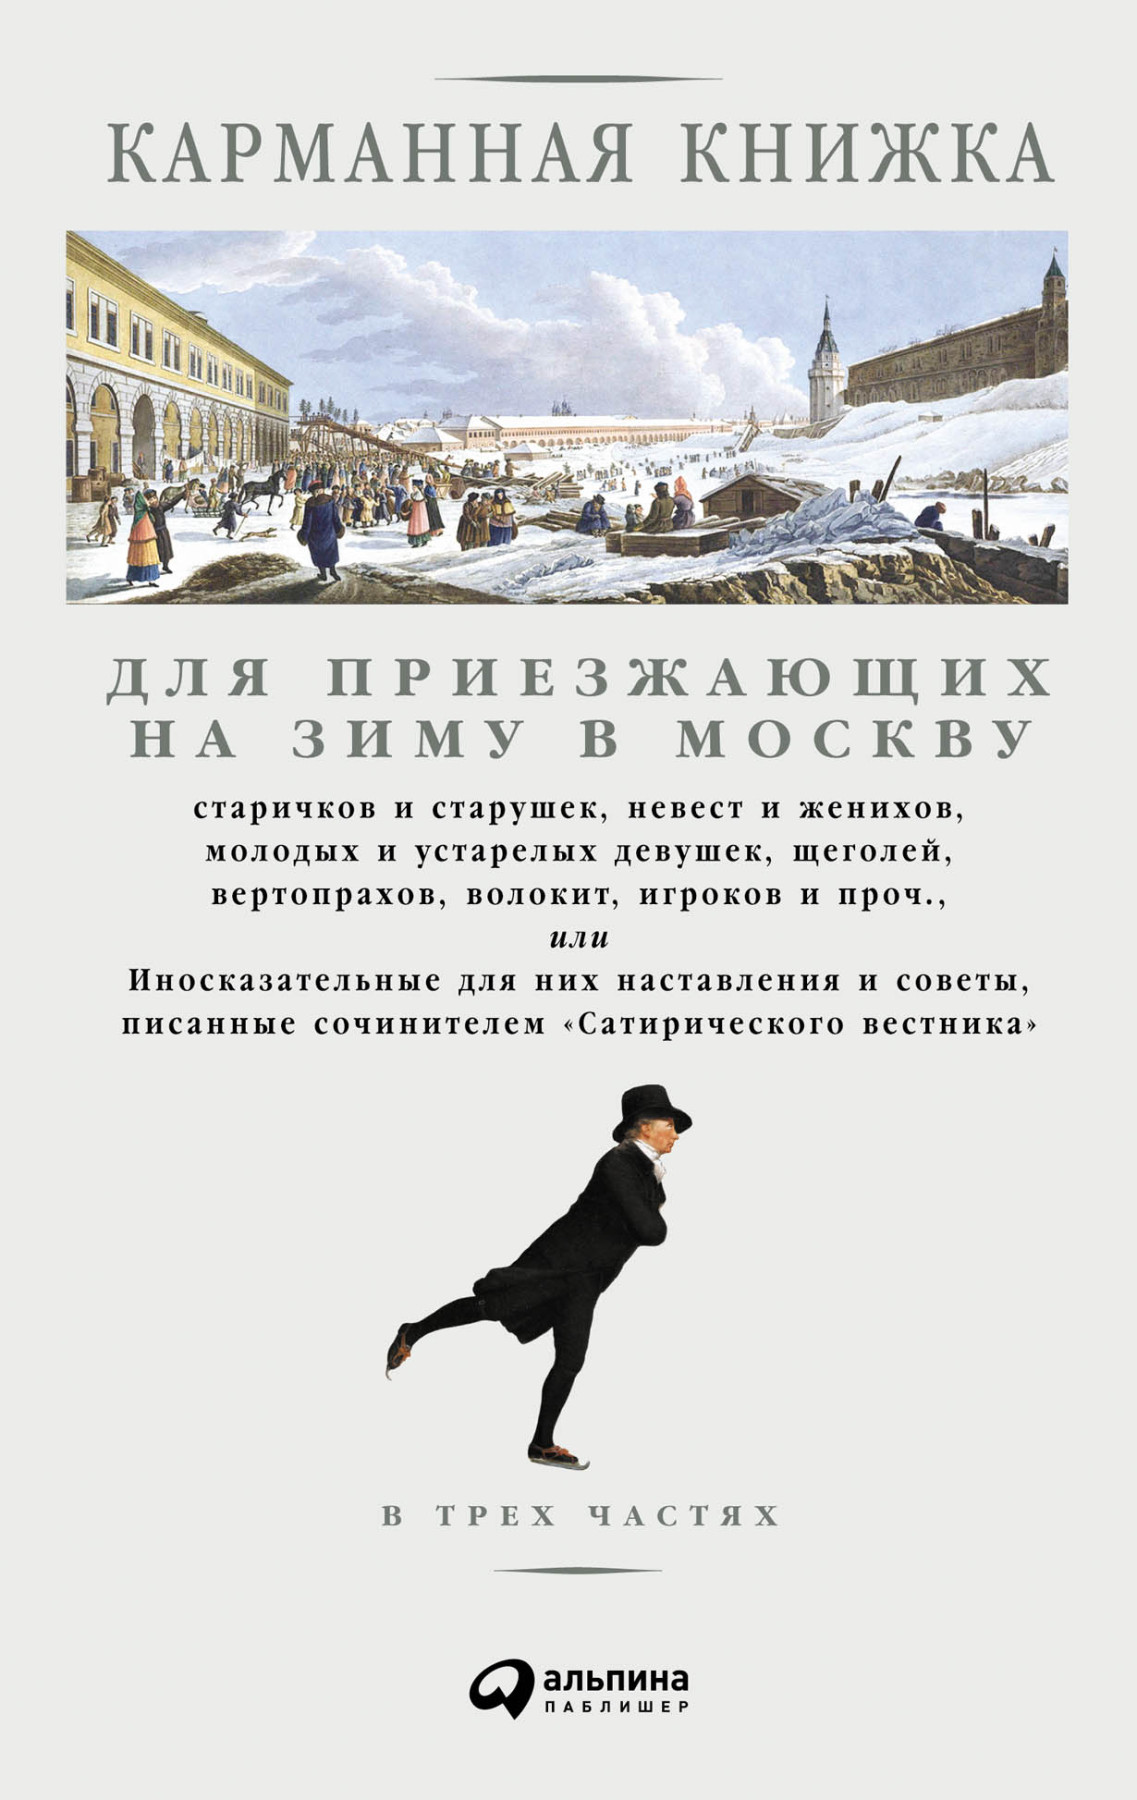 Карманная книжка для приезжающих на зиму в Москву обложка.